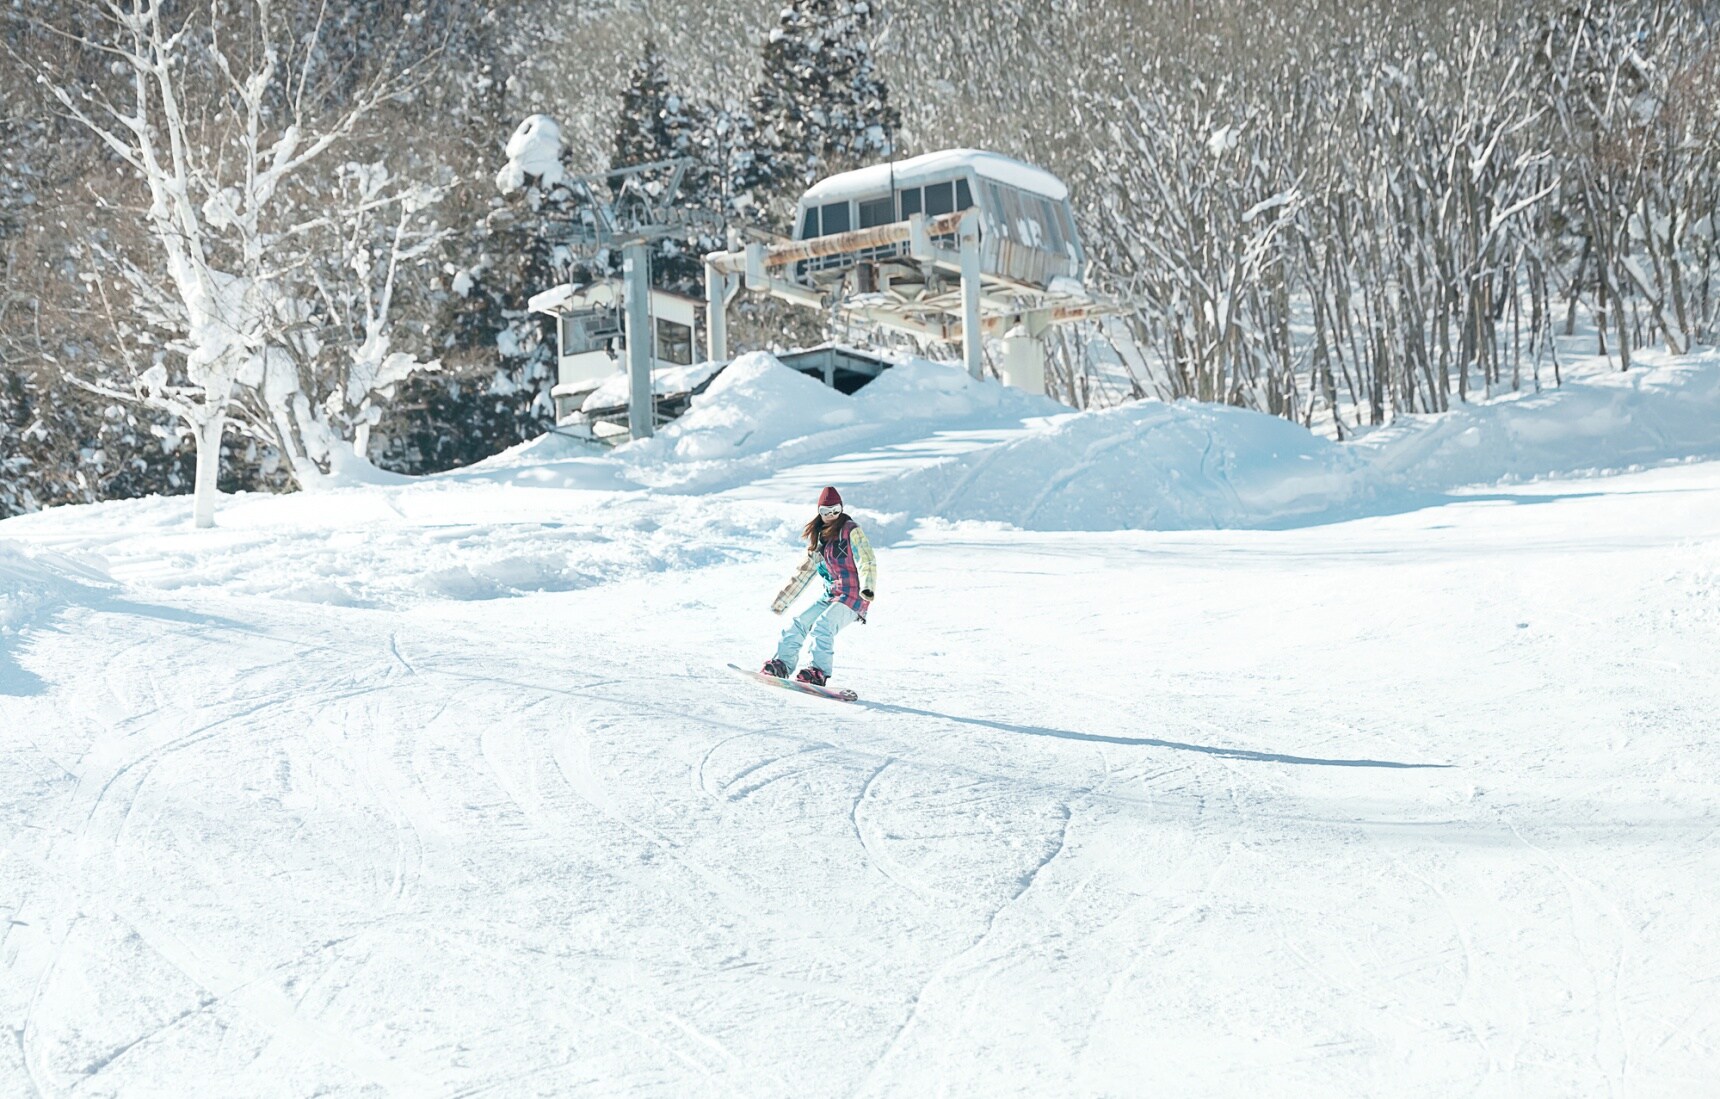 5 โลเกชั่นสกีสุดเจ๋งในญี่ปุ่น